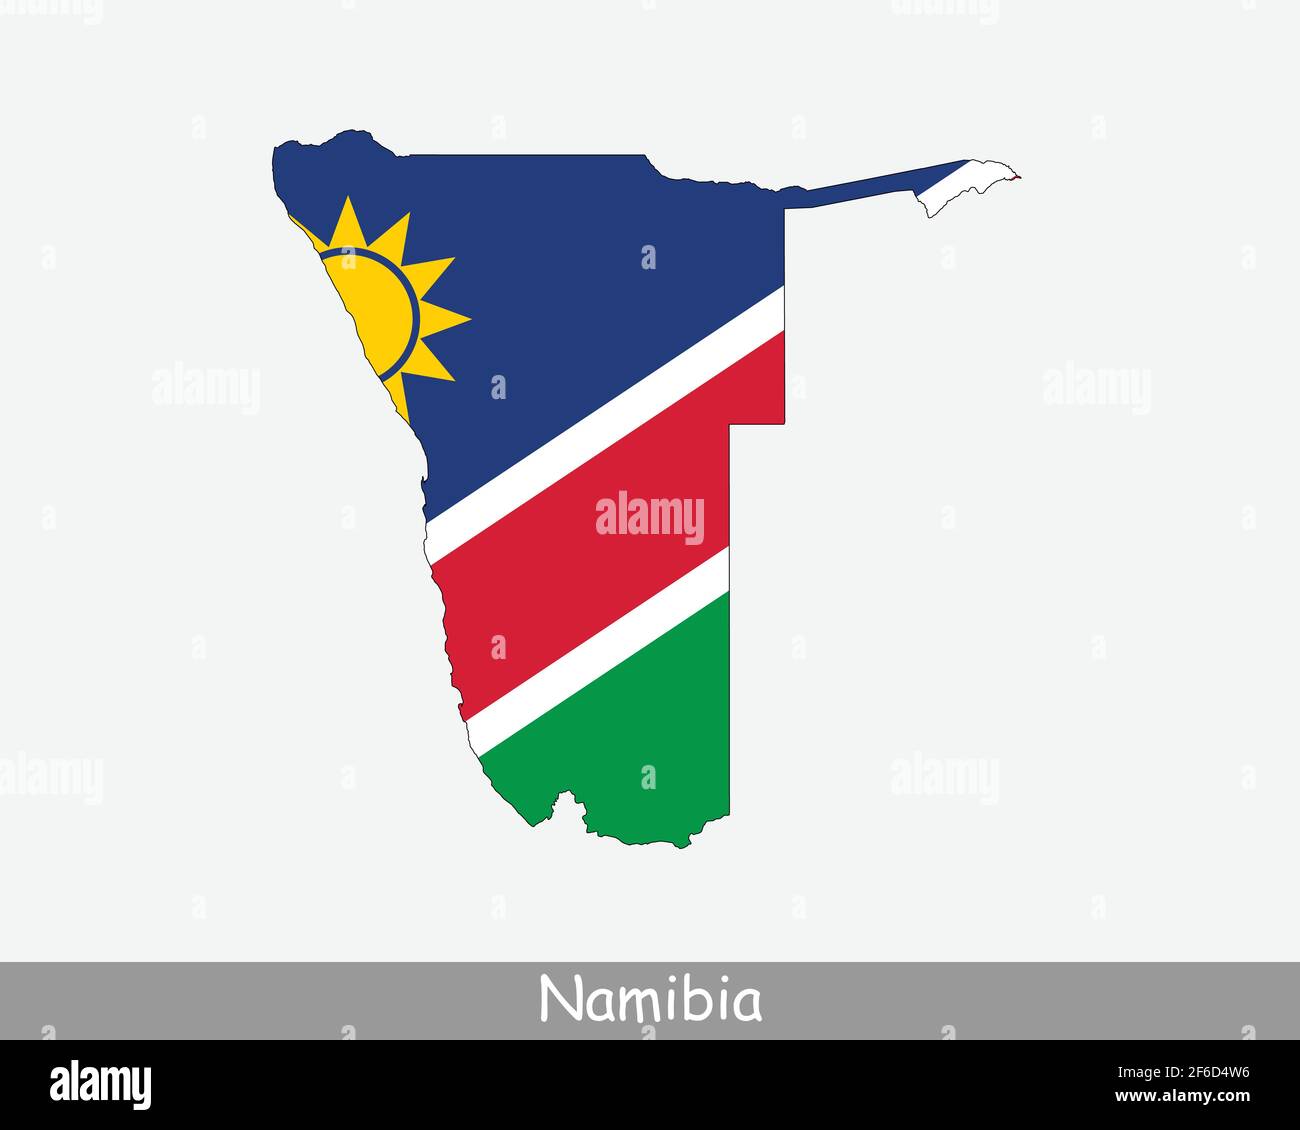 Namibia Flagge Karte. Karte der Republik Namibia mit der namibischen Nationalflagge isoliert auf weißem Hintergrund. Vektorgrafik. Stock Vektor